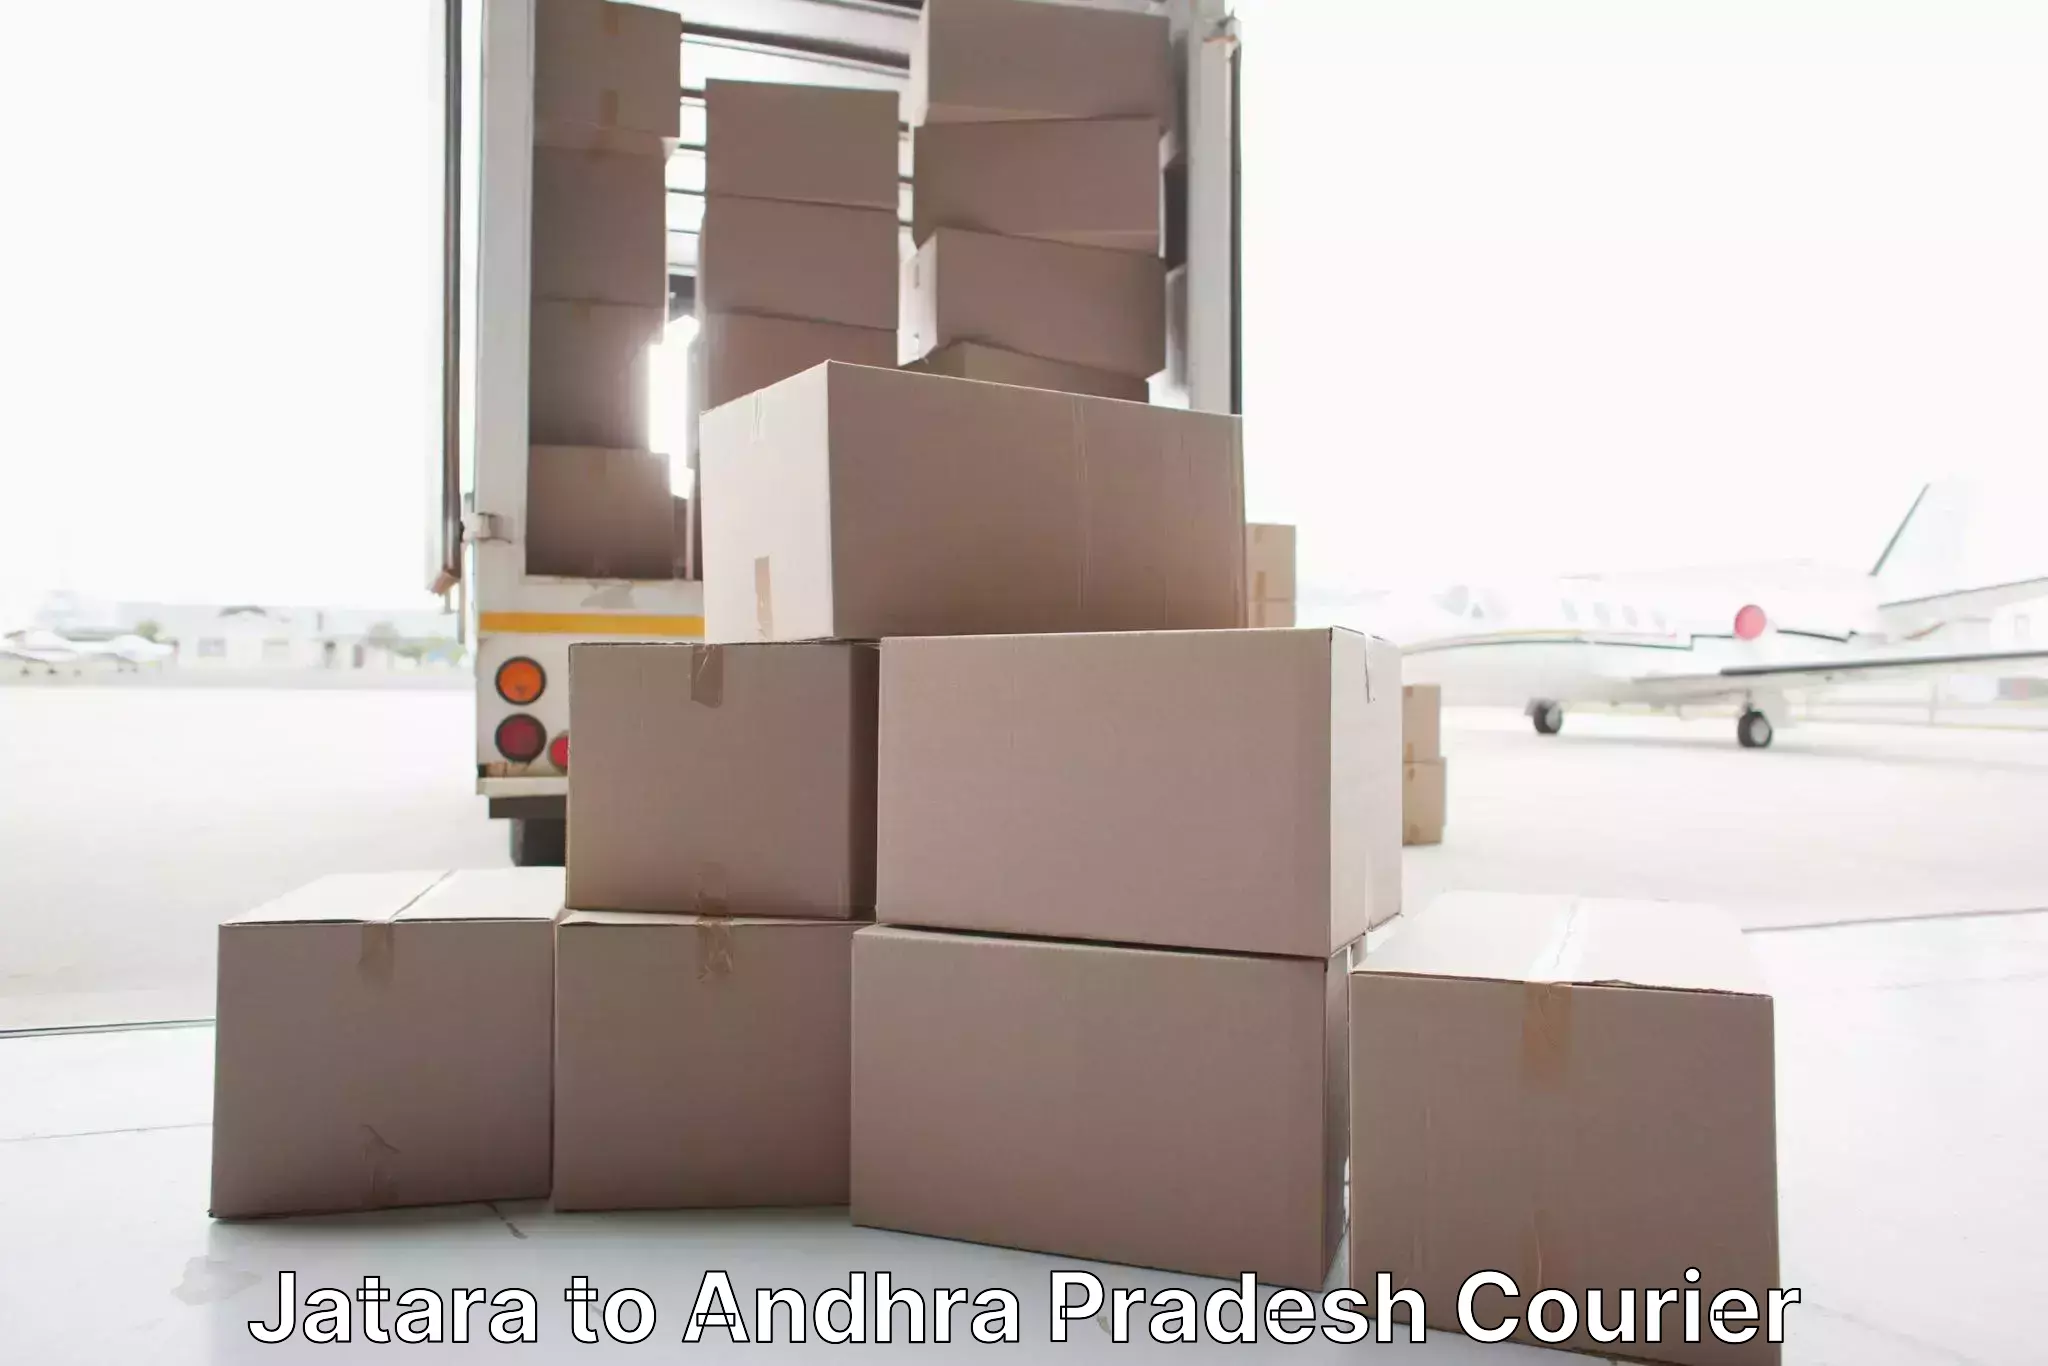 Quality relocation services Jatara to Andhra Pradesh